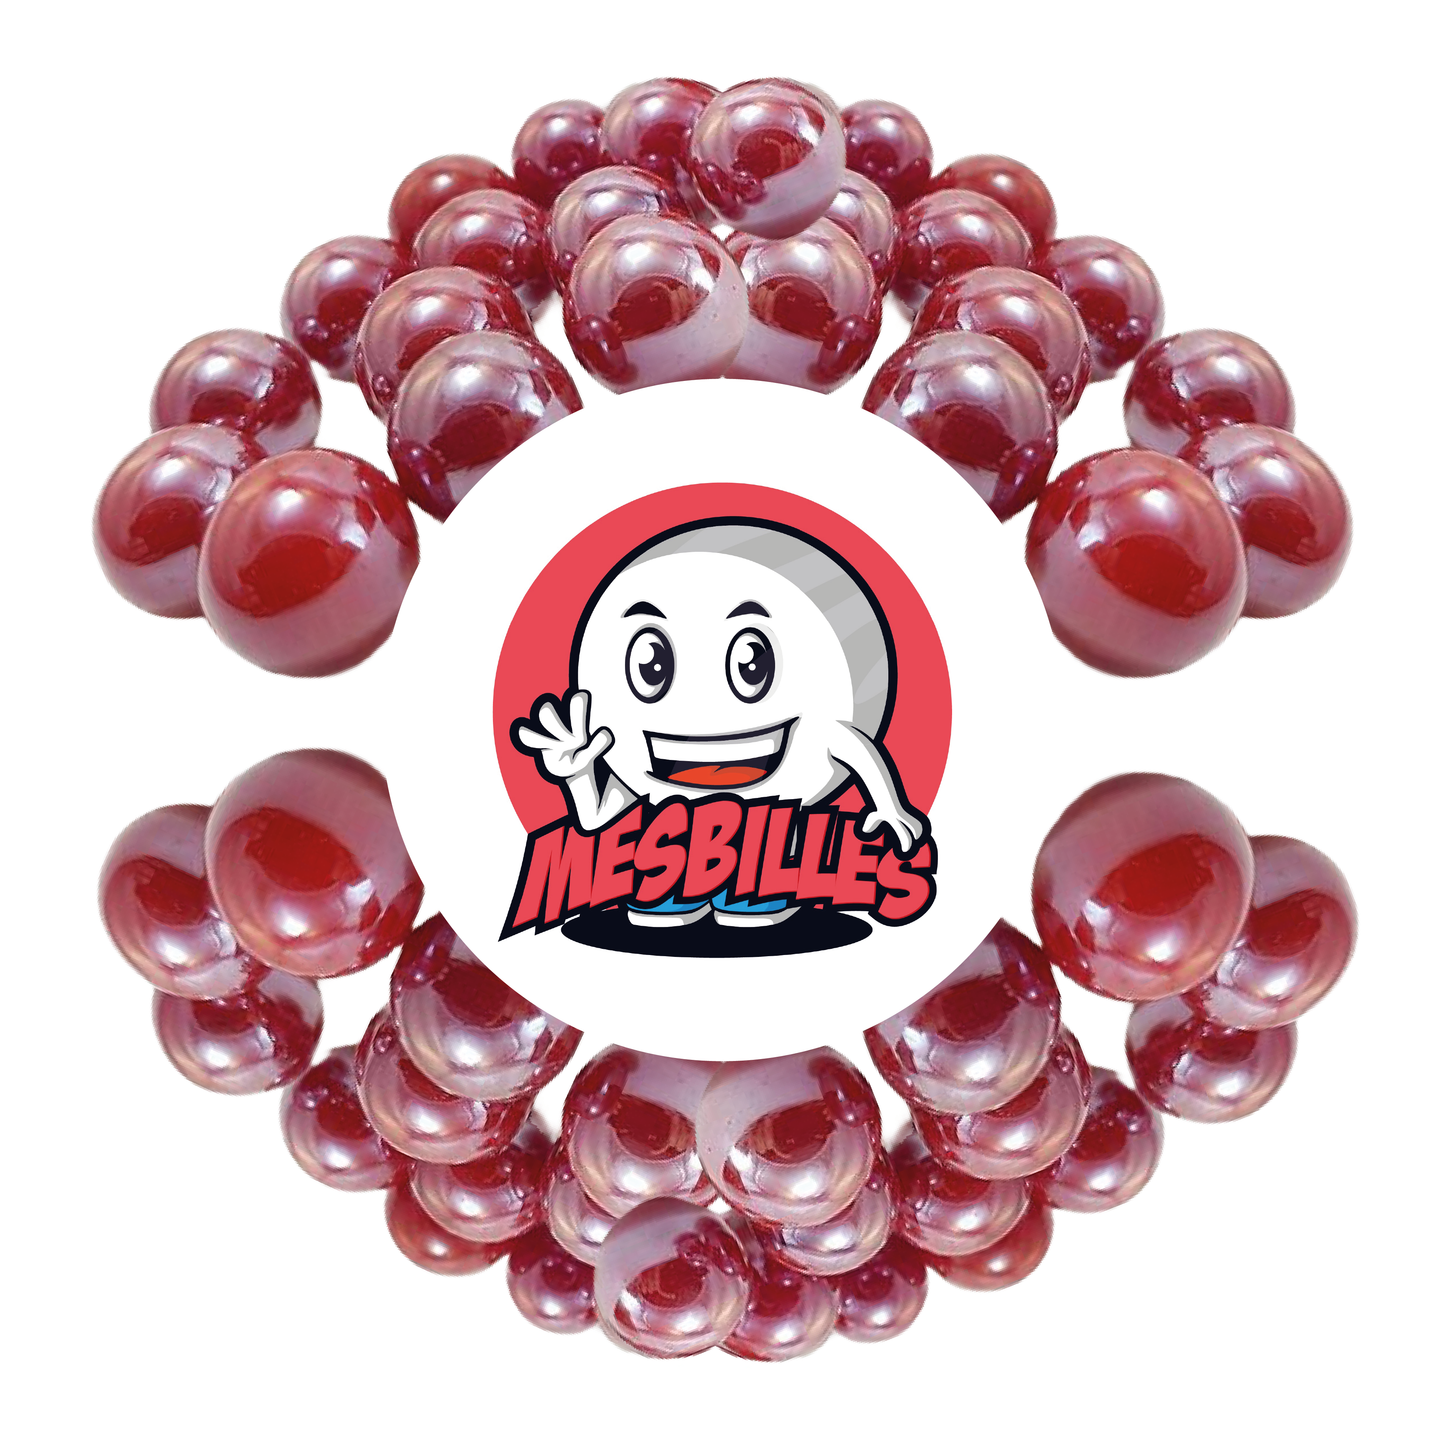 Image de la Mascotte MesBilles entourée de Billes Glossy 25 mm - Verre Opaque et Brillant Rouge